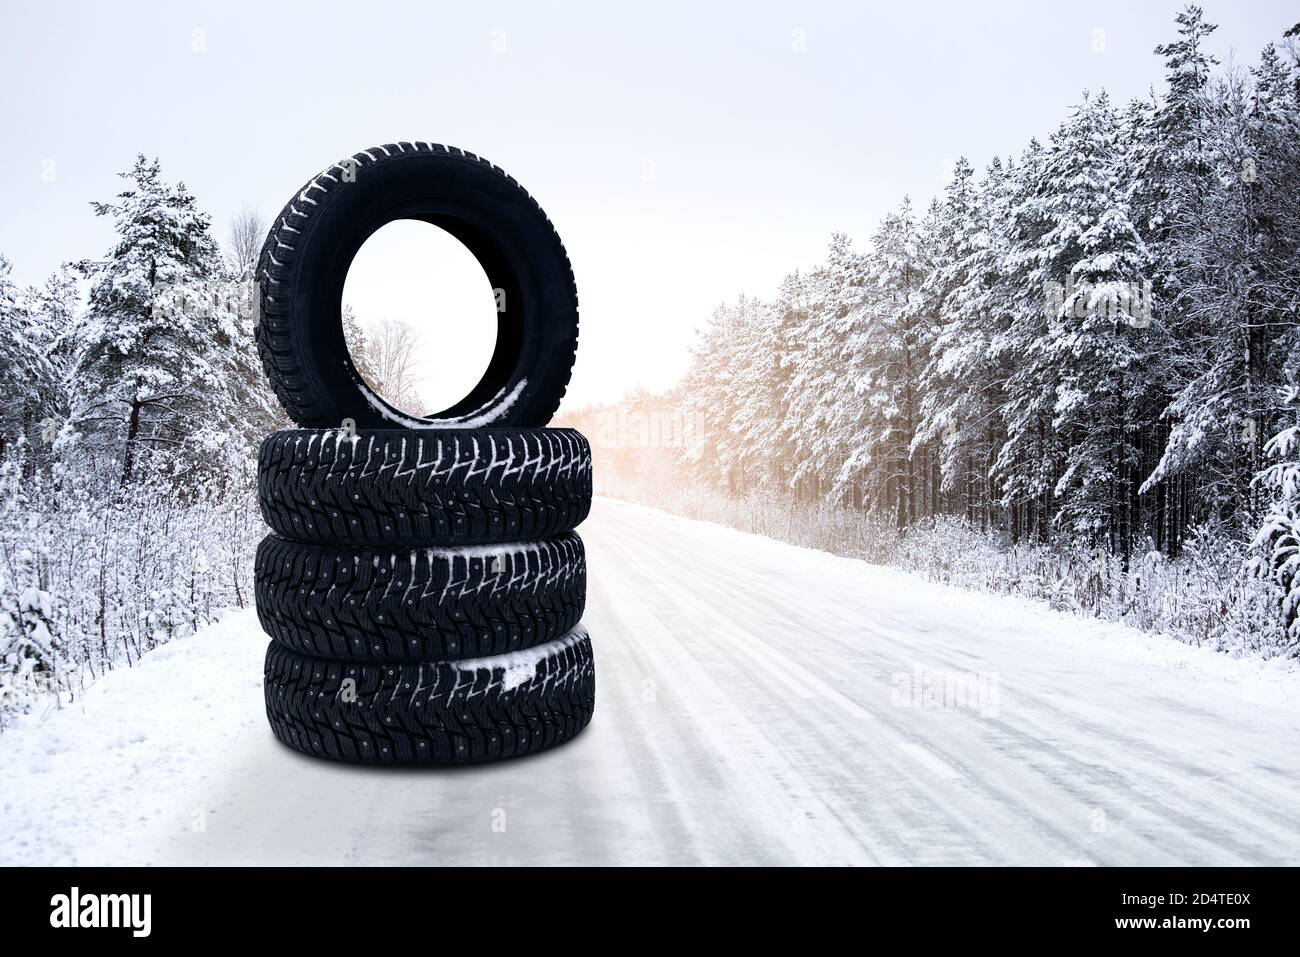 Pneus d'hiver sur une route enneigée. Changement saisonnier des pneus. Banque D'Images